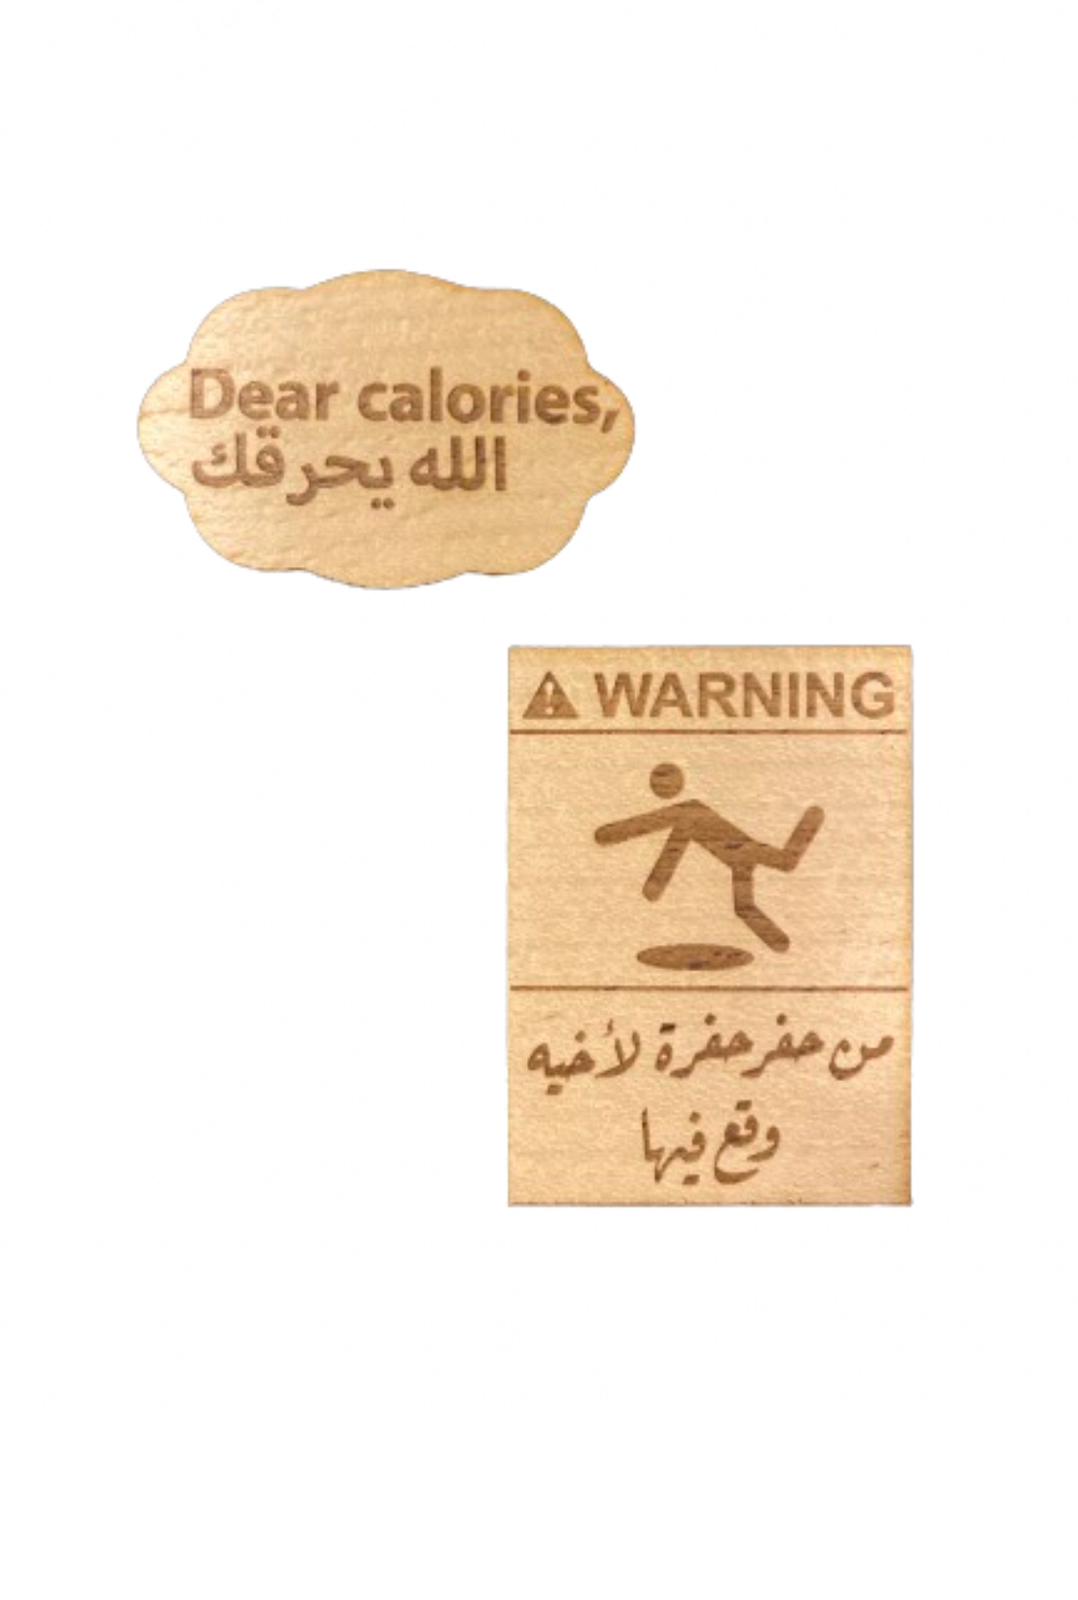 ملصق Dear calories الله يحرقك - Warning 